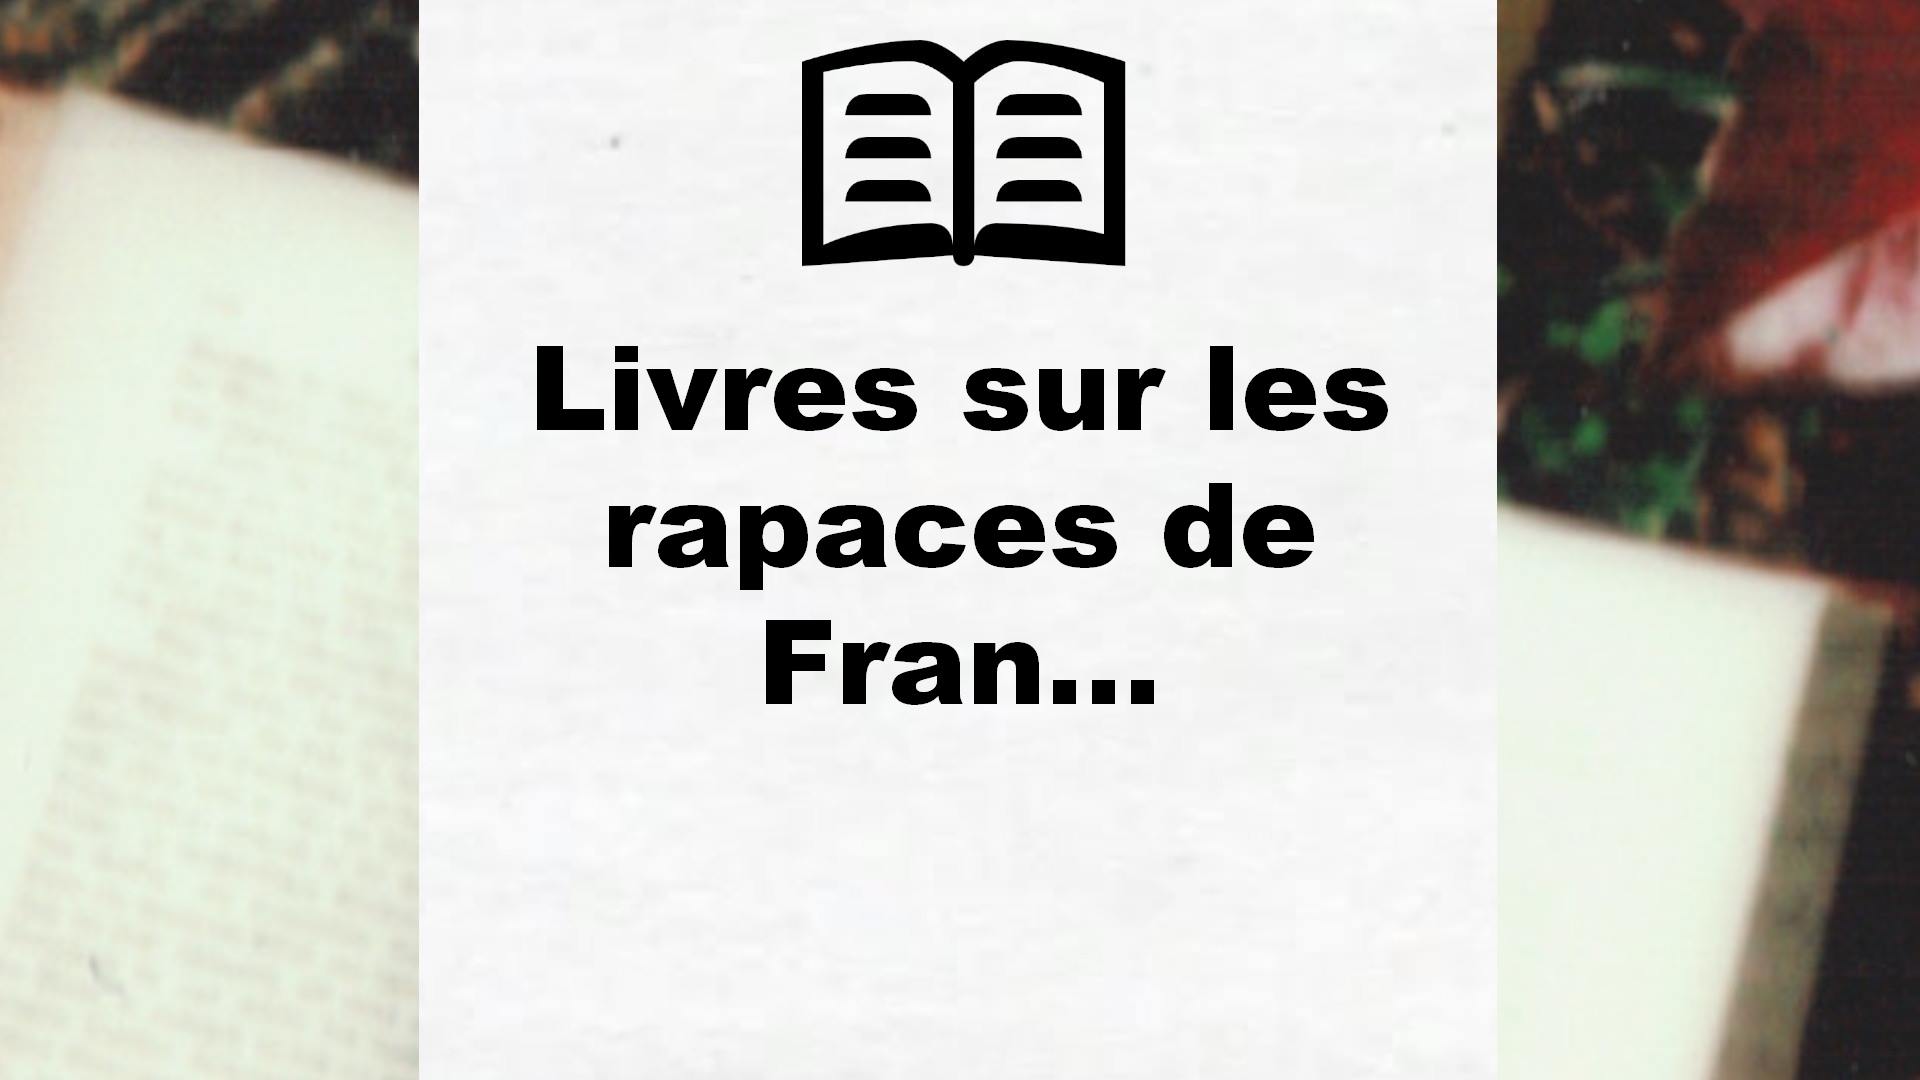 Livres sur les rapaces de France